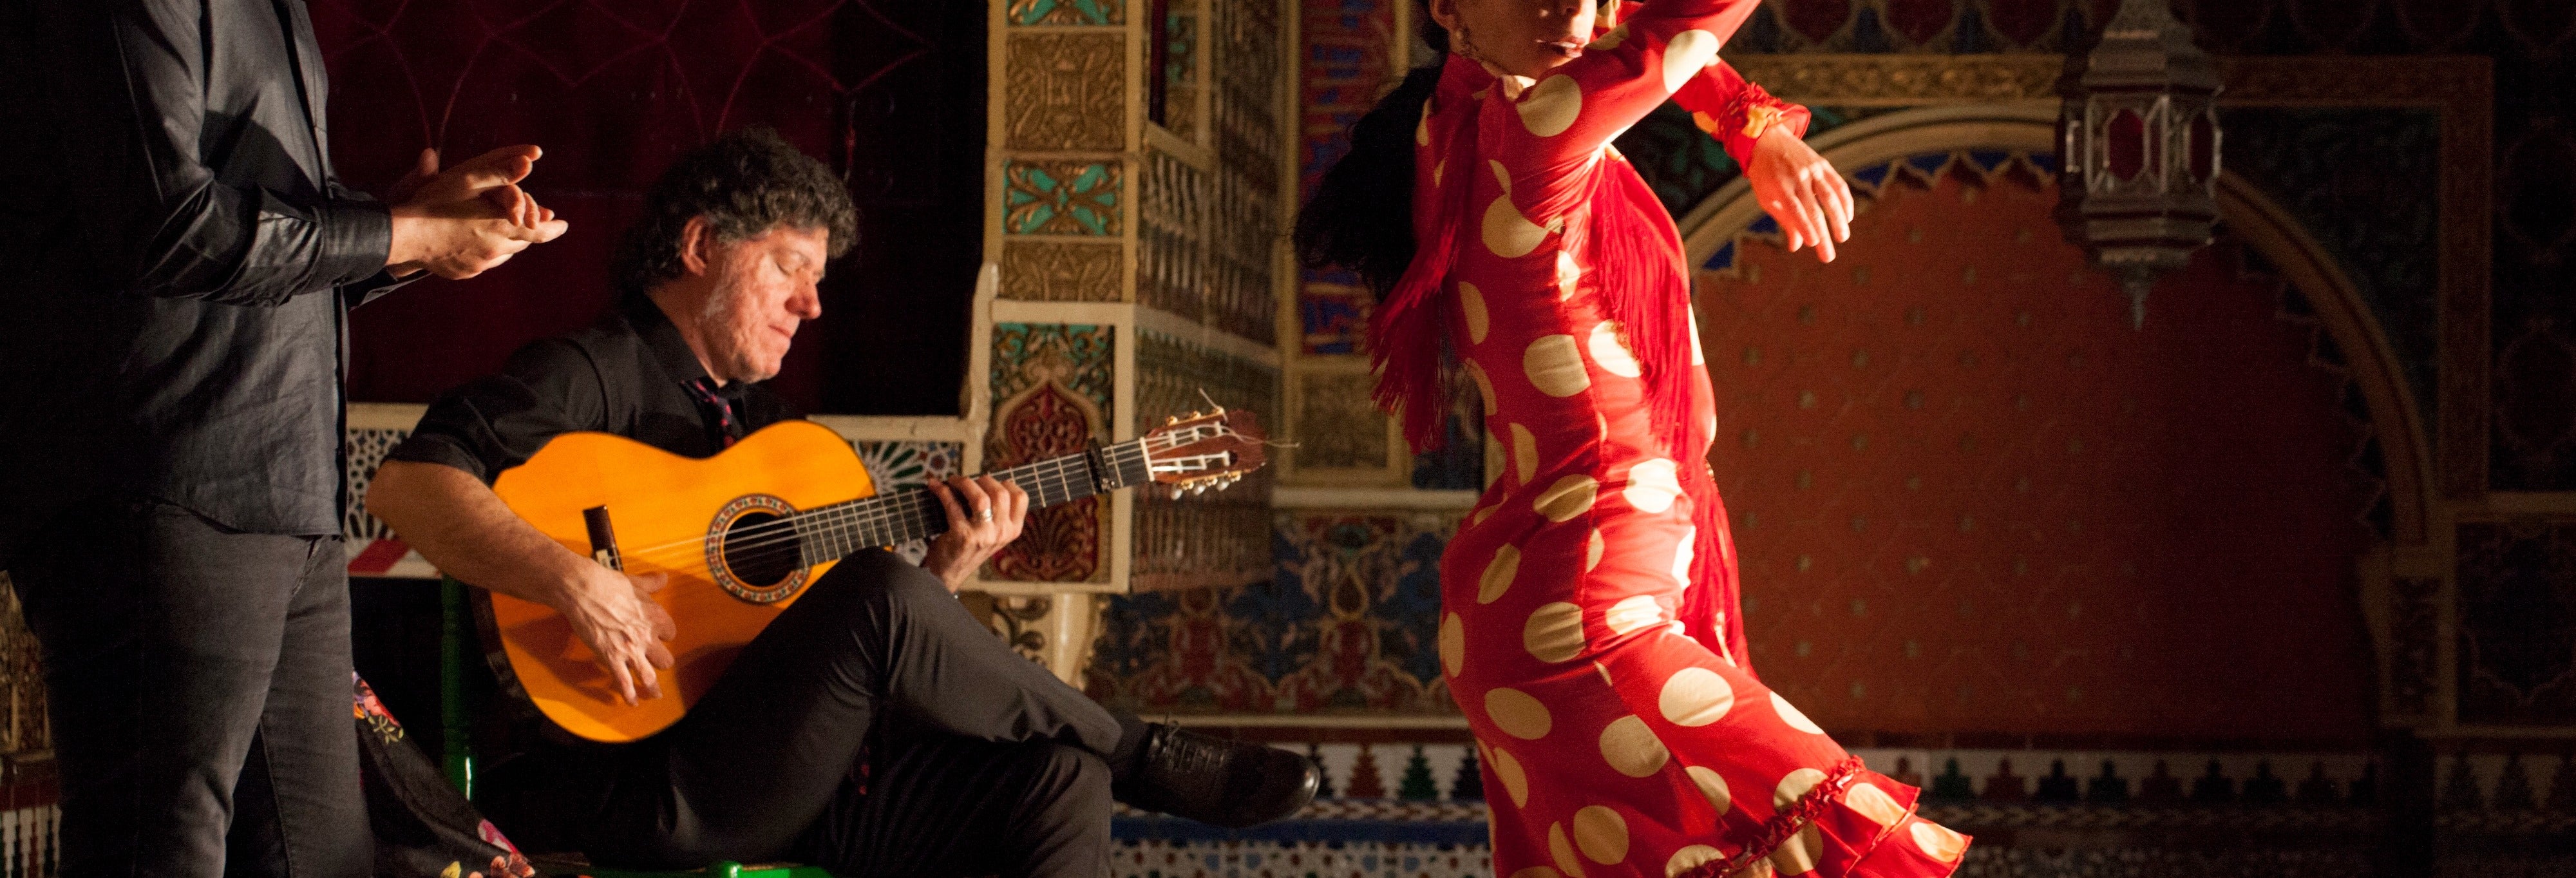 Espetáculo flamenco no Torres Bermejas